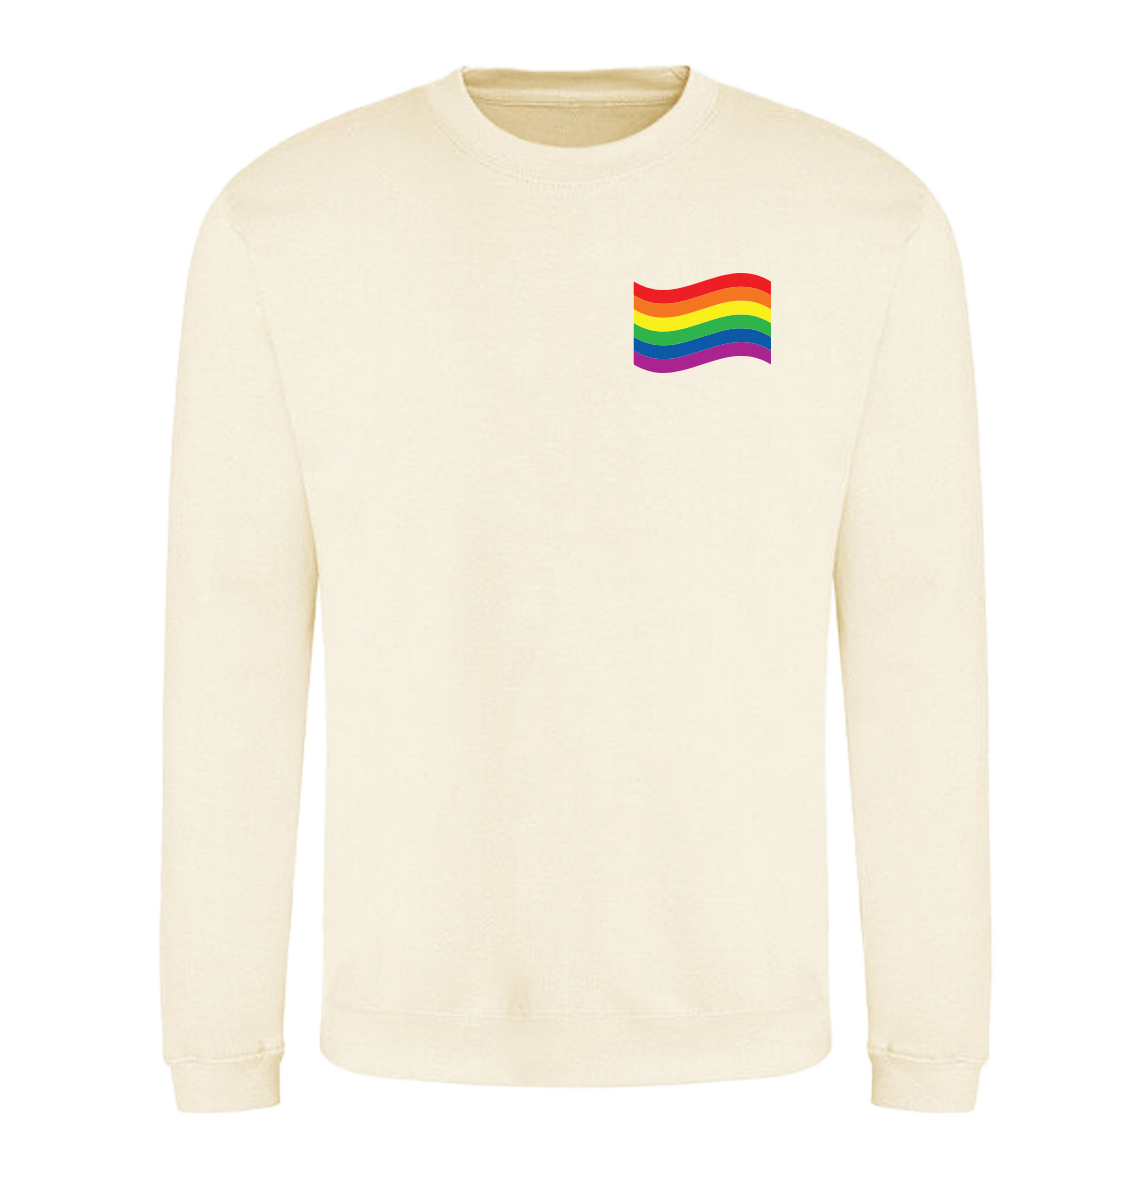 Wavy Rainbow Sweatshirt